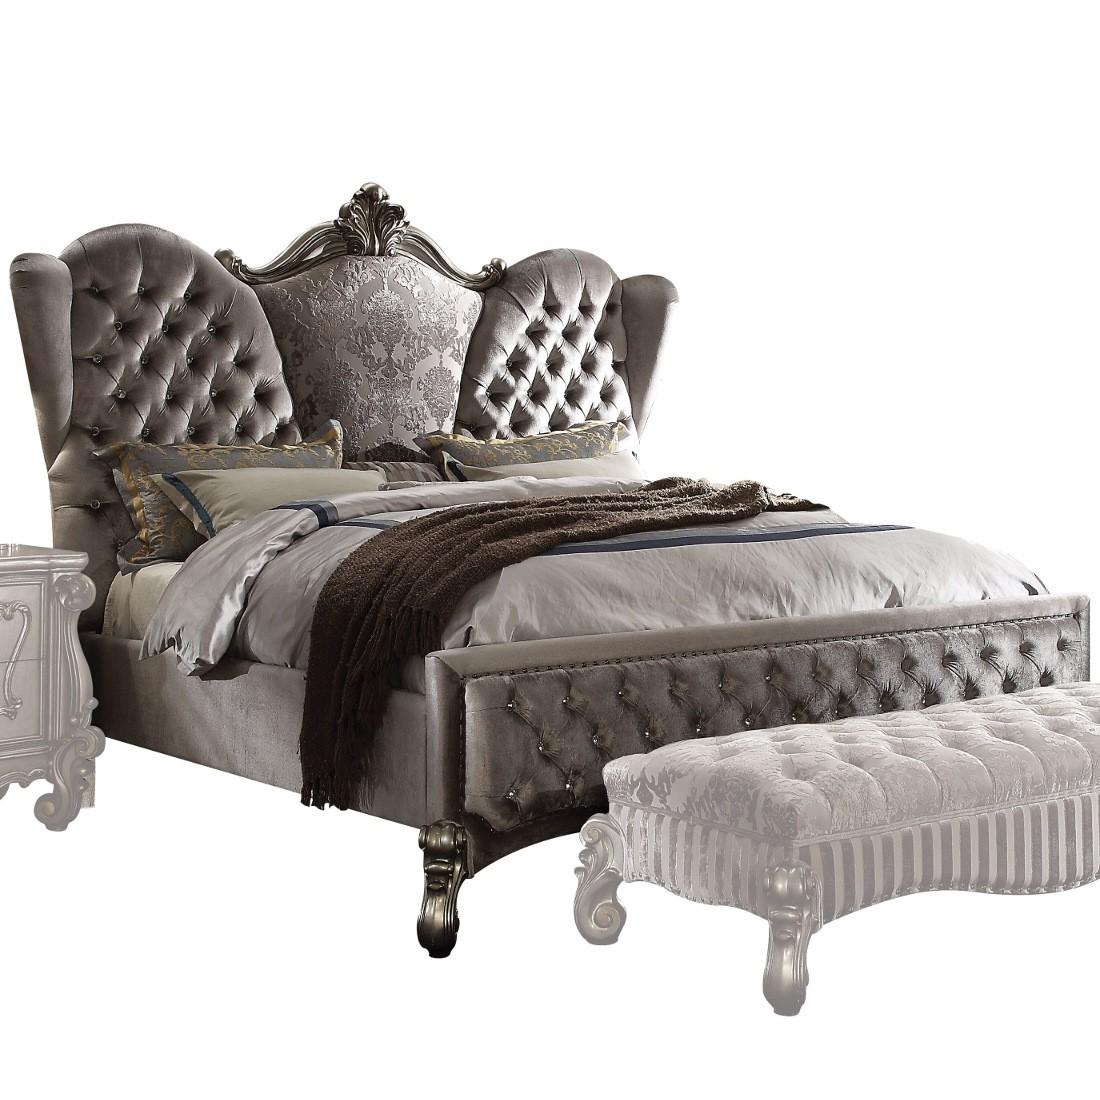 

    
Doline King Tufted Upholstered Bedroom Set 3Pcs Classic
